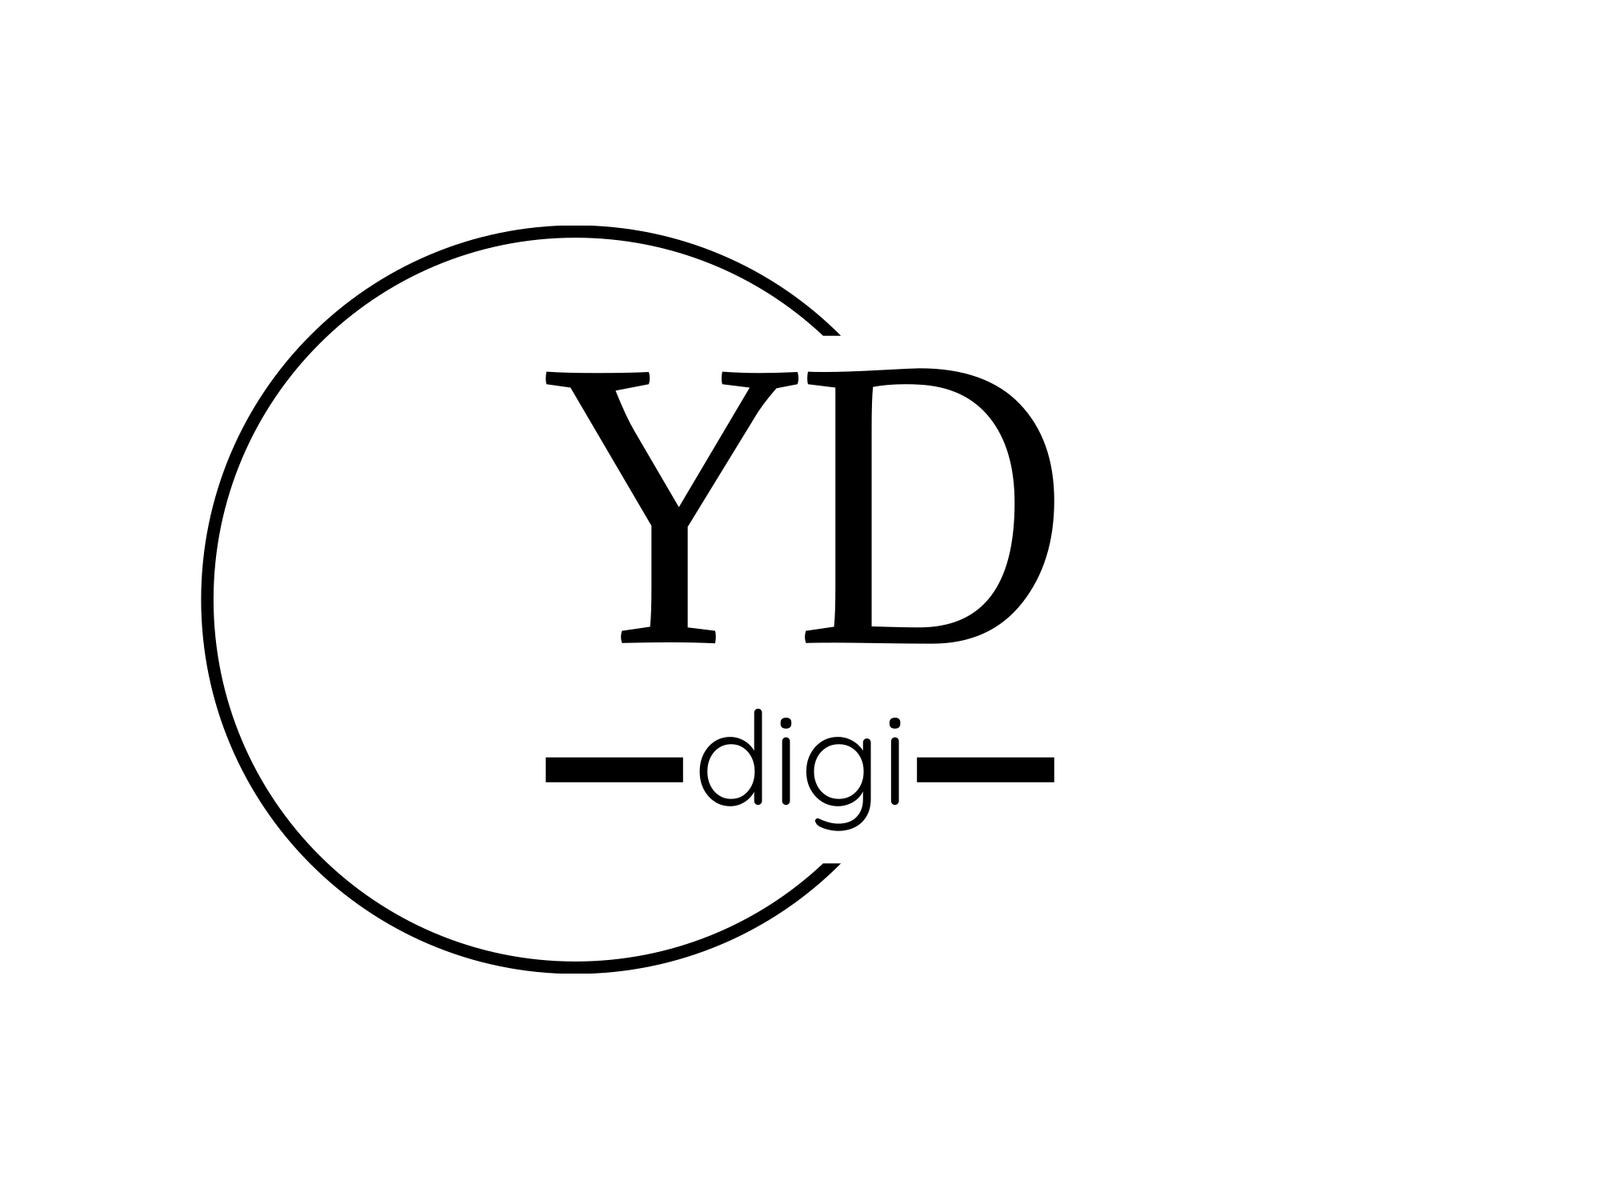 yasiqdigi logo